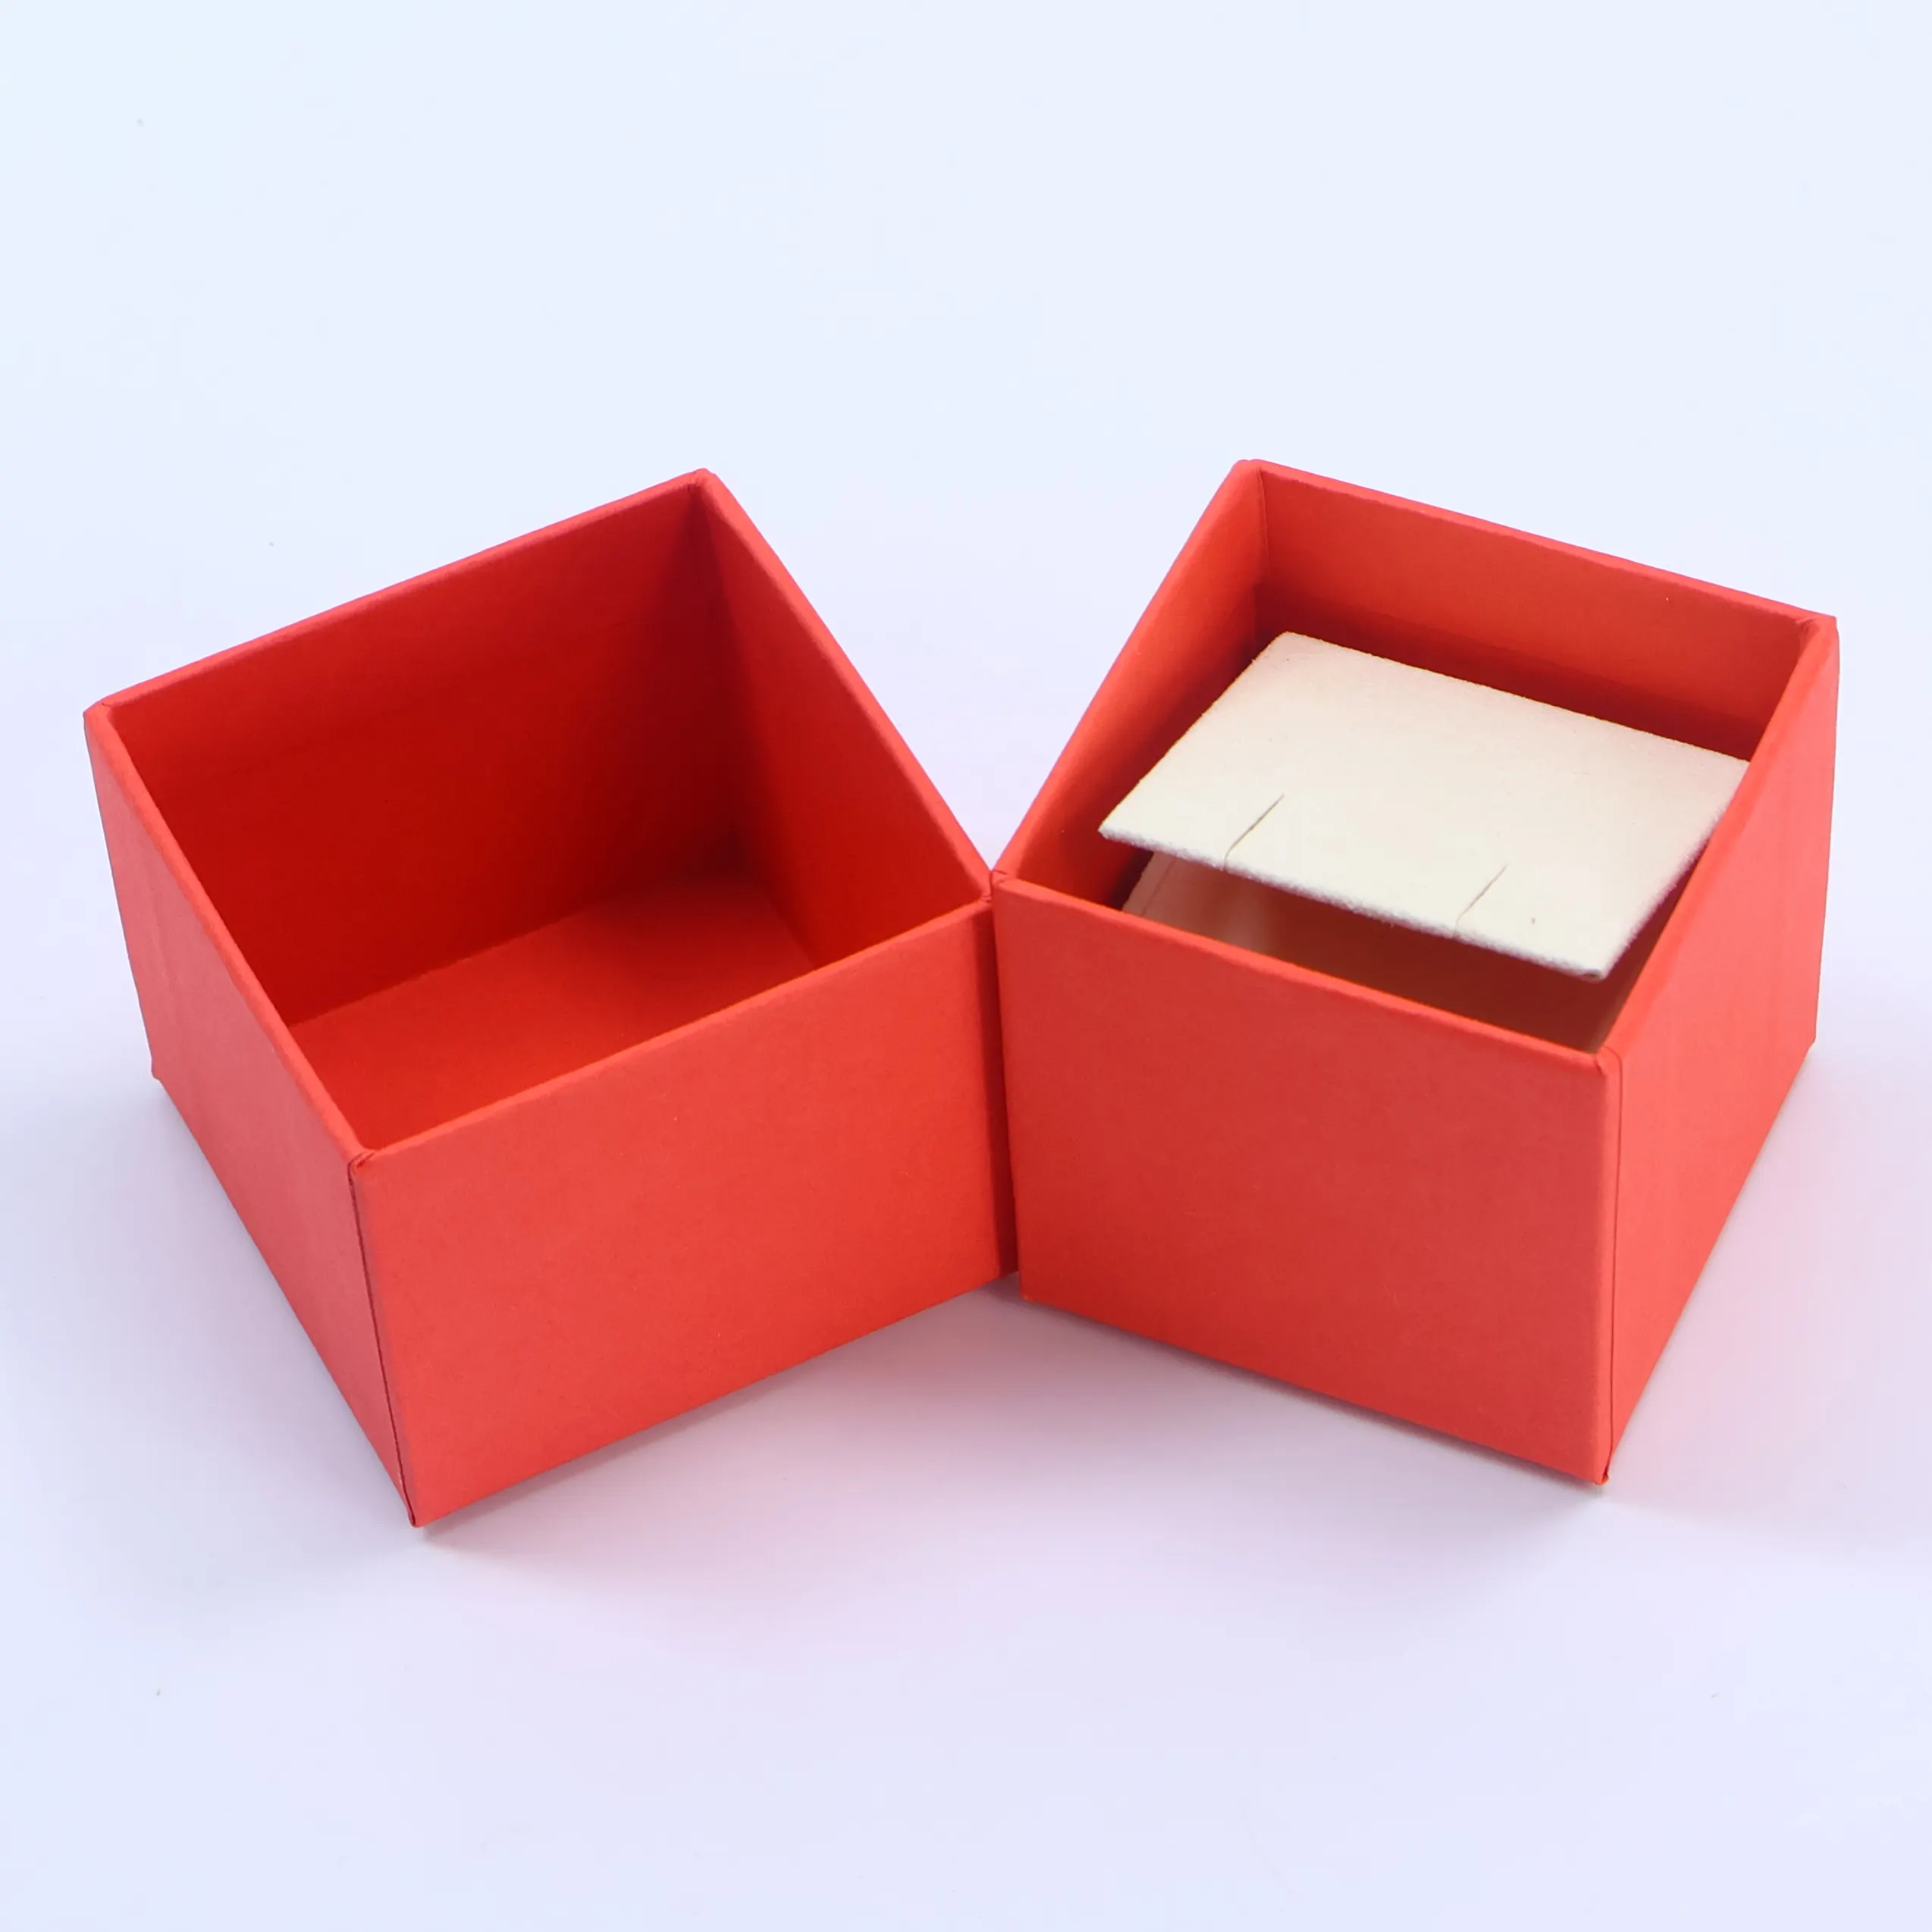 प्रीमियम डिज़ाइन नेत्र मेकअप उपकरण उपहार फैंसी डिज़ाइन रीसाइक्लेबल उभरा हुआ पैटर्न कस्टम मुद्रित छोटे पैकेजिंग पेपर बॉक्स